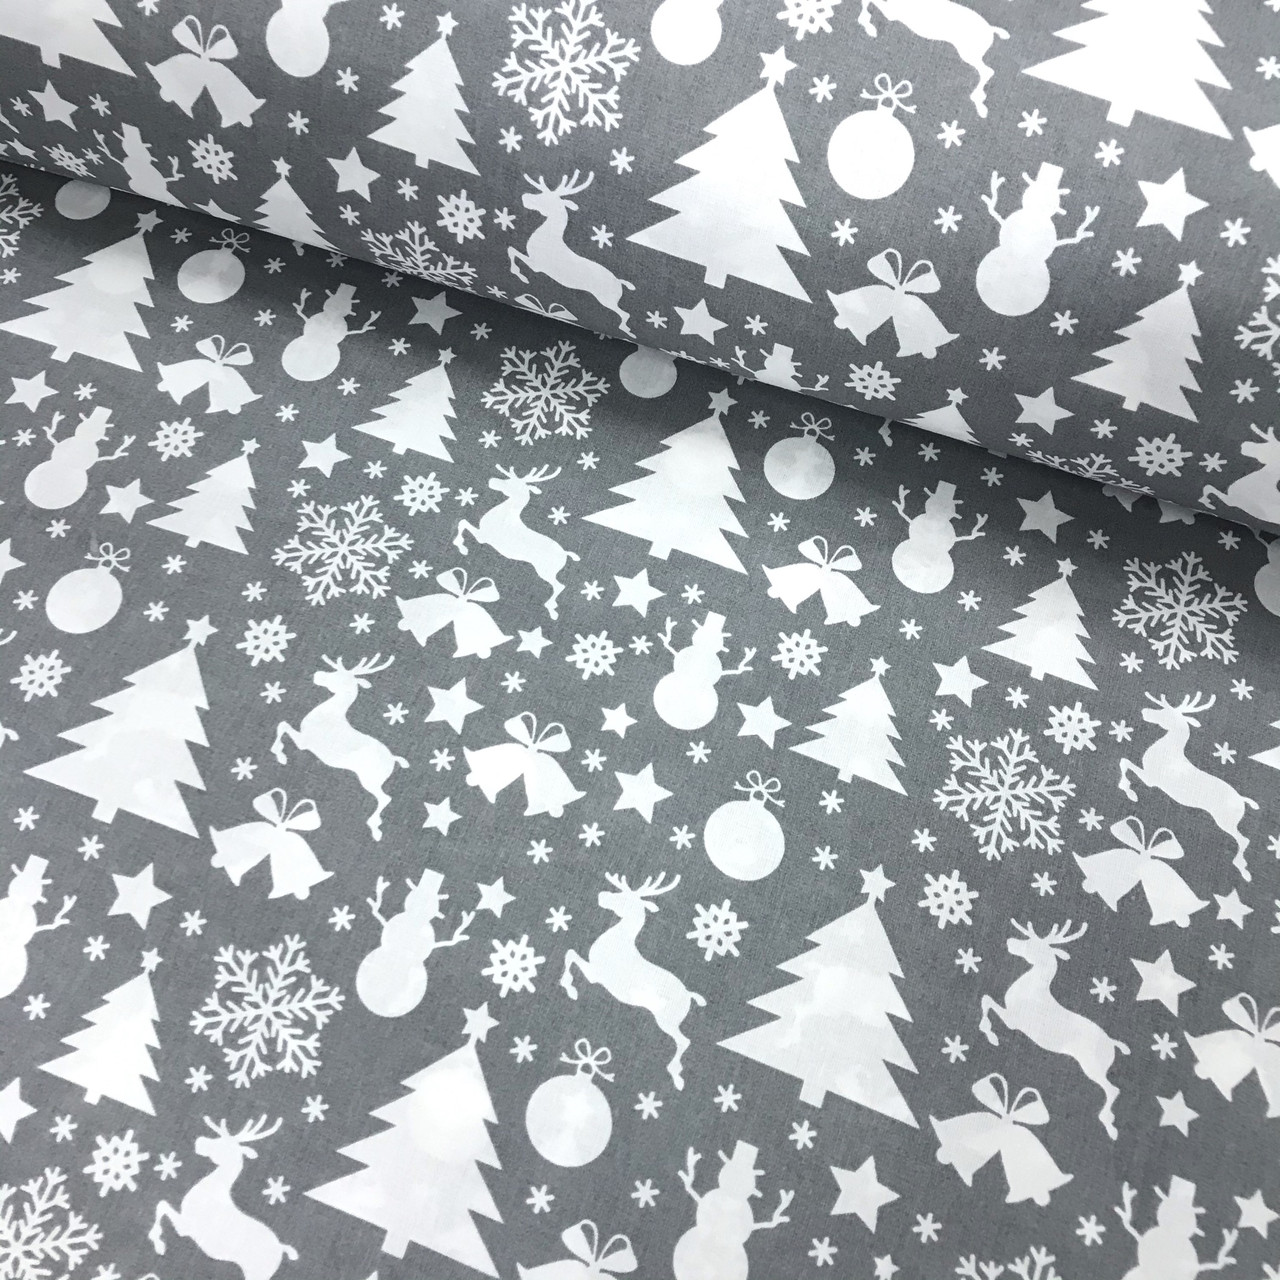 Новорічна тканина Польська, ялинки, сніжинки, олені білі на сірому (0289)